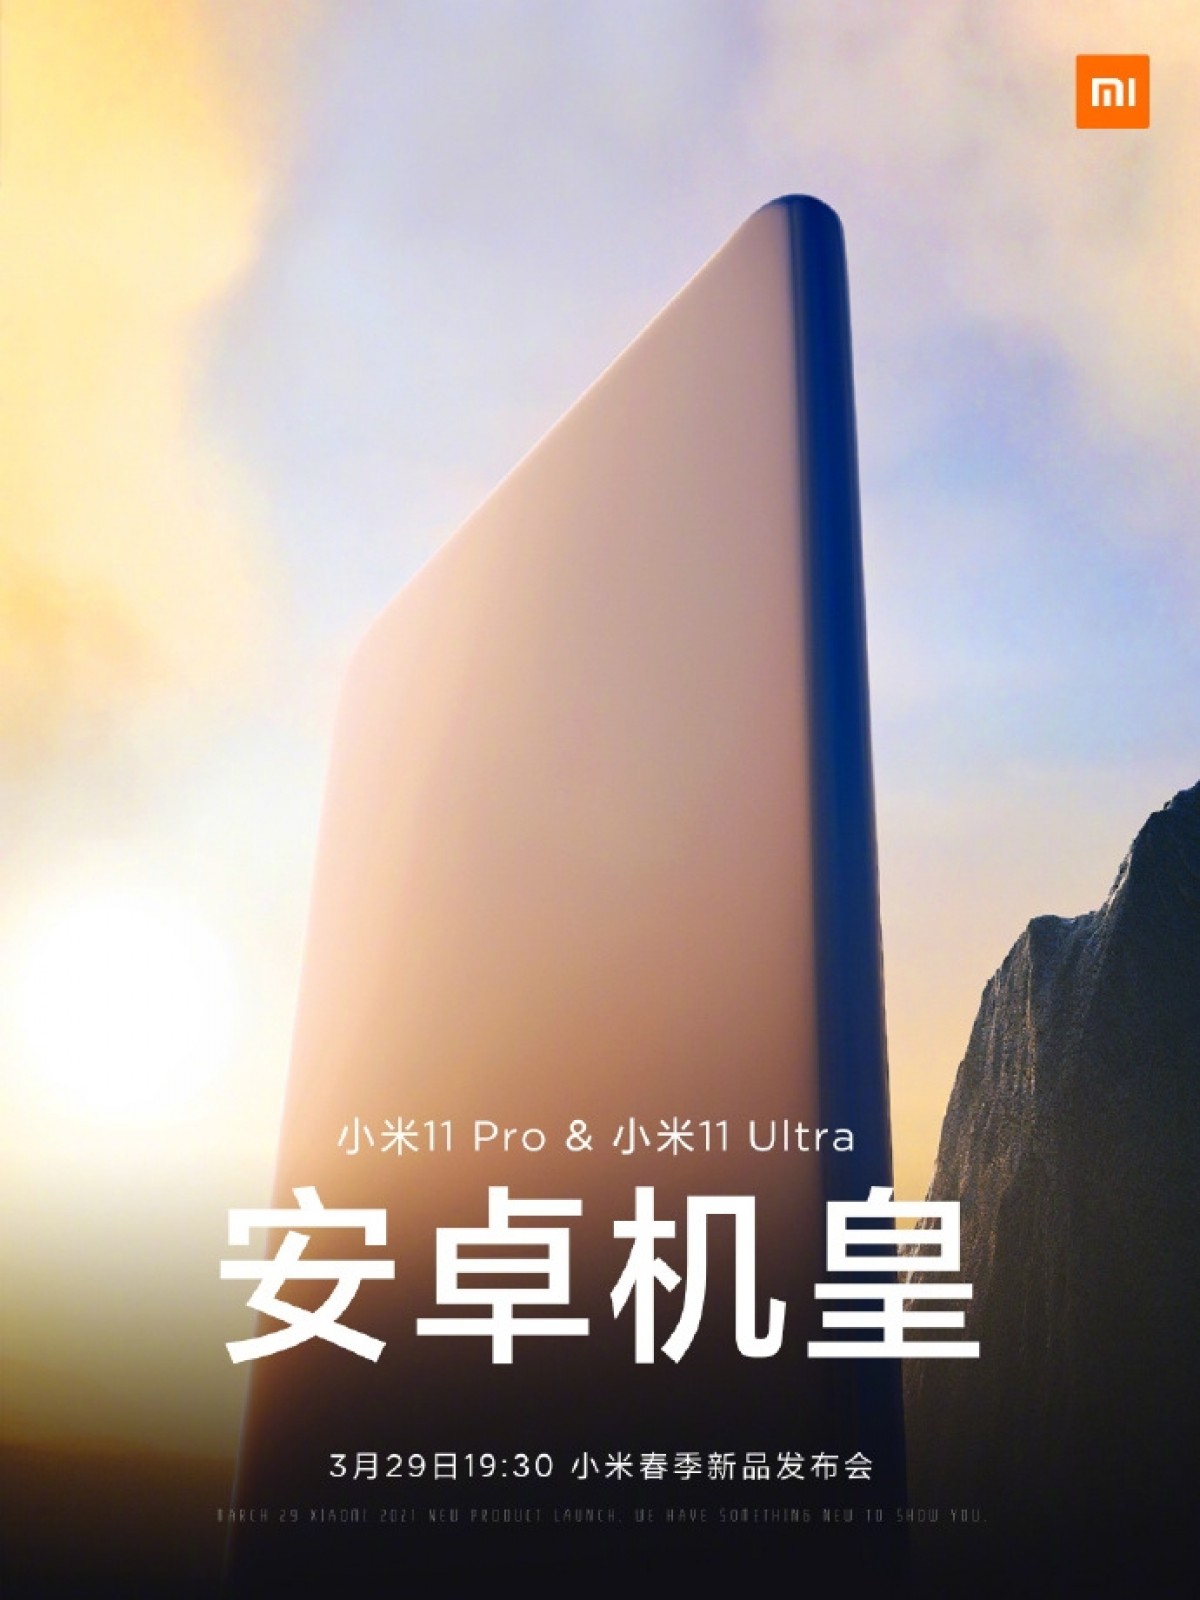 Le poster de l&#039;événement chinois © Xiaomi